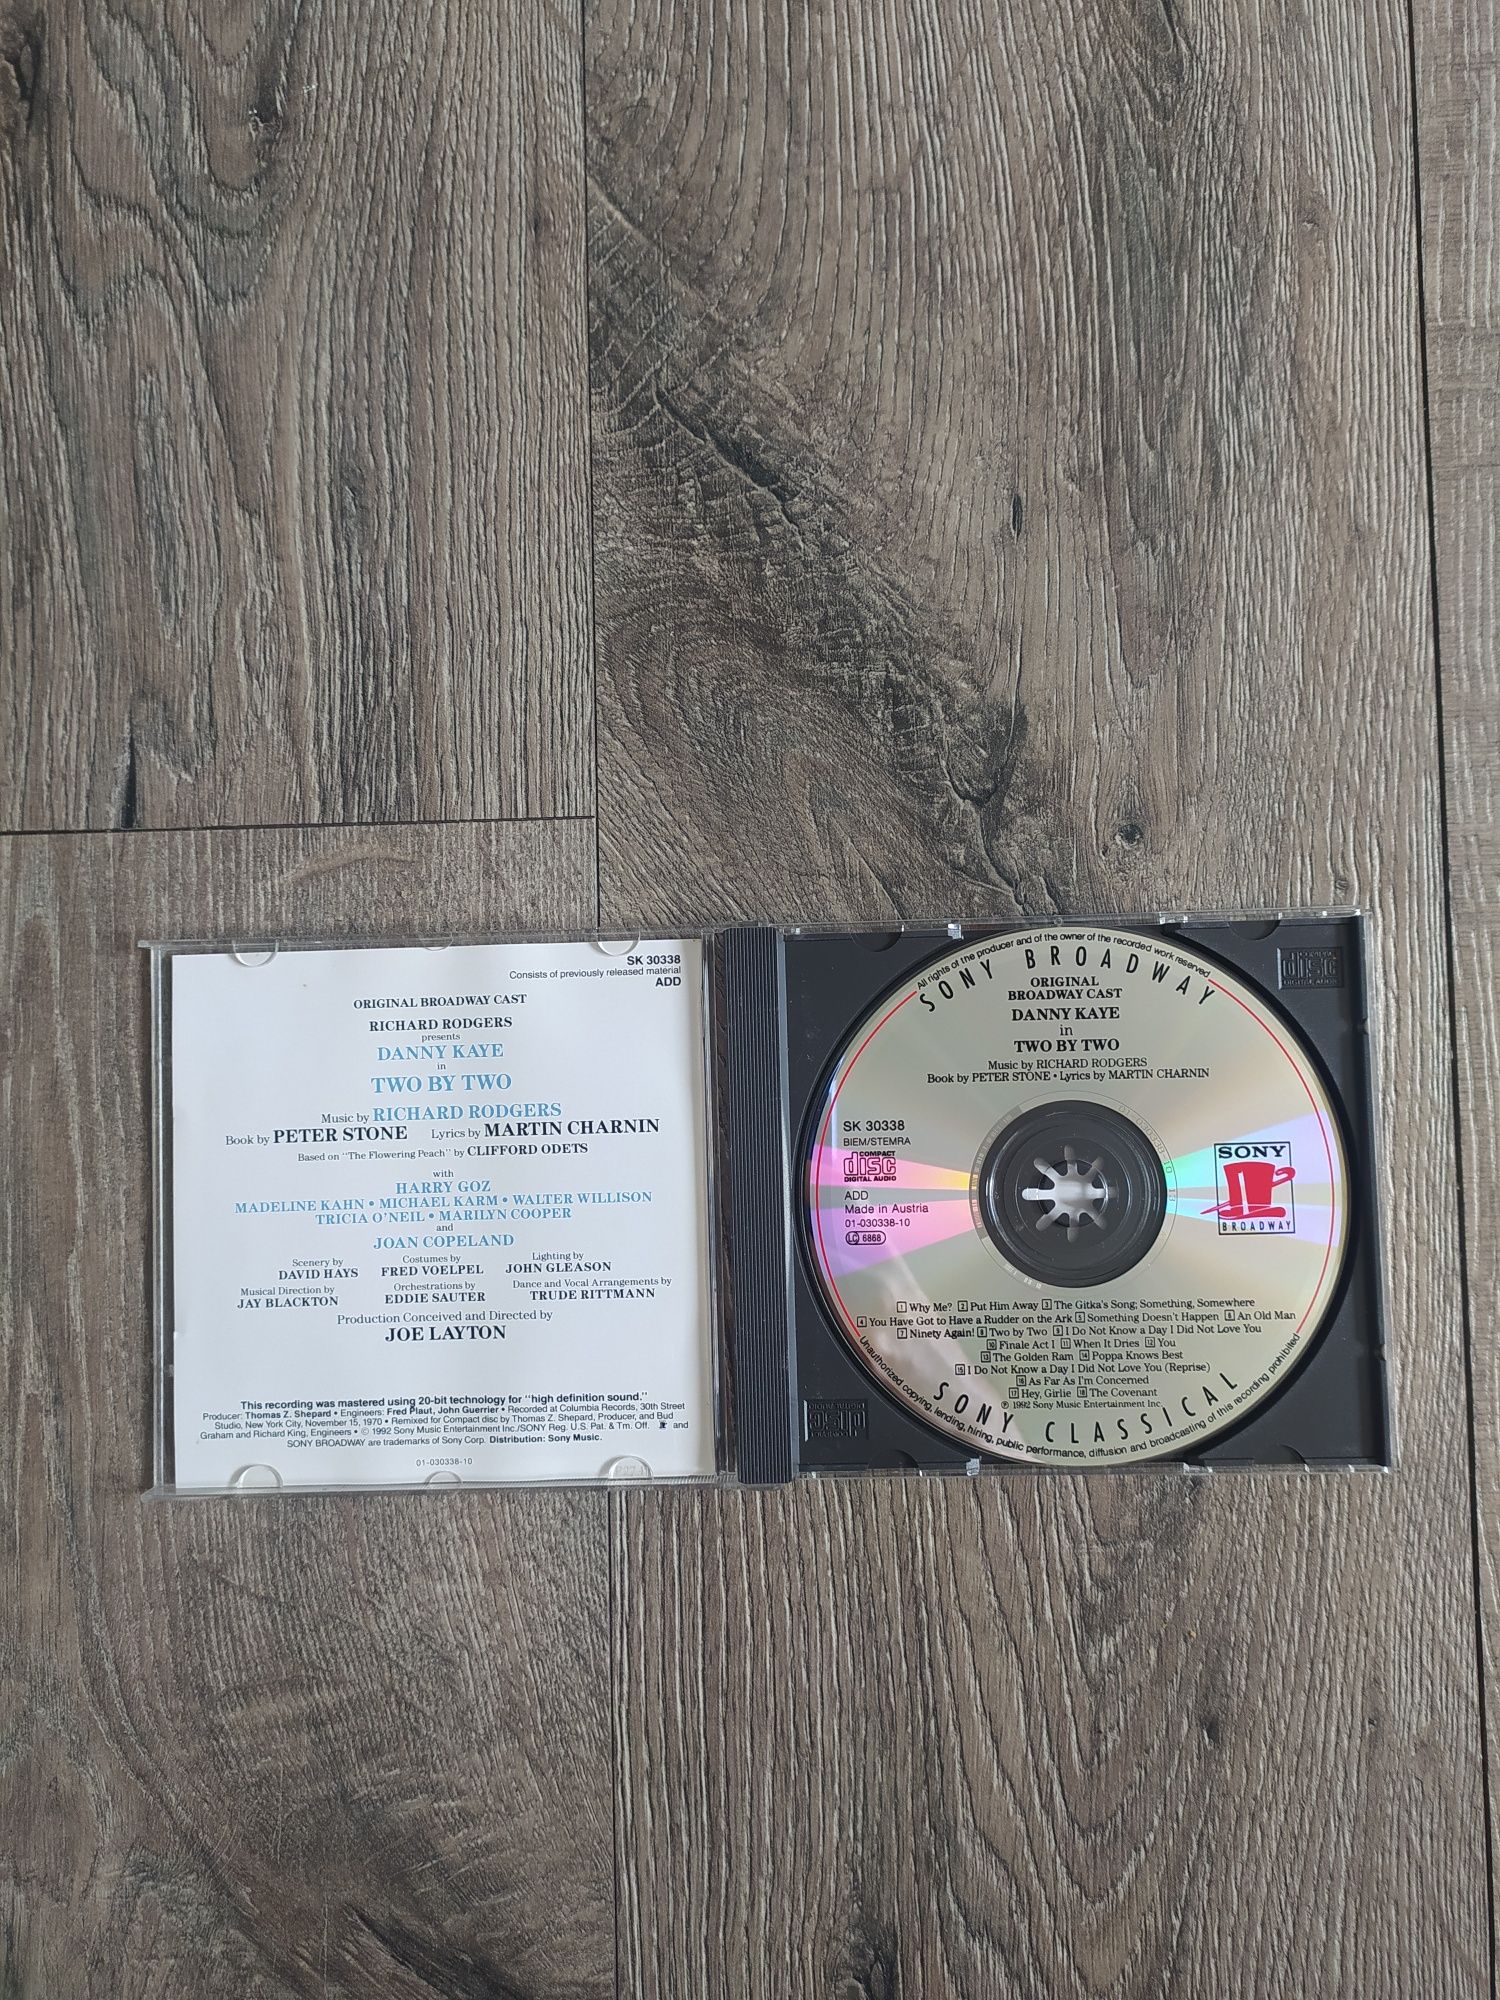 Płyta CD Sony two by two Oryginal Broadway cast Wysyłka